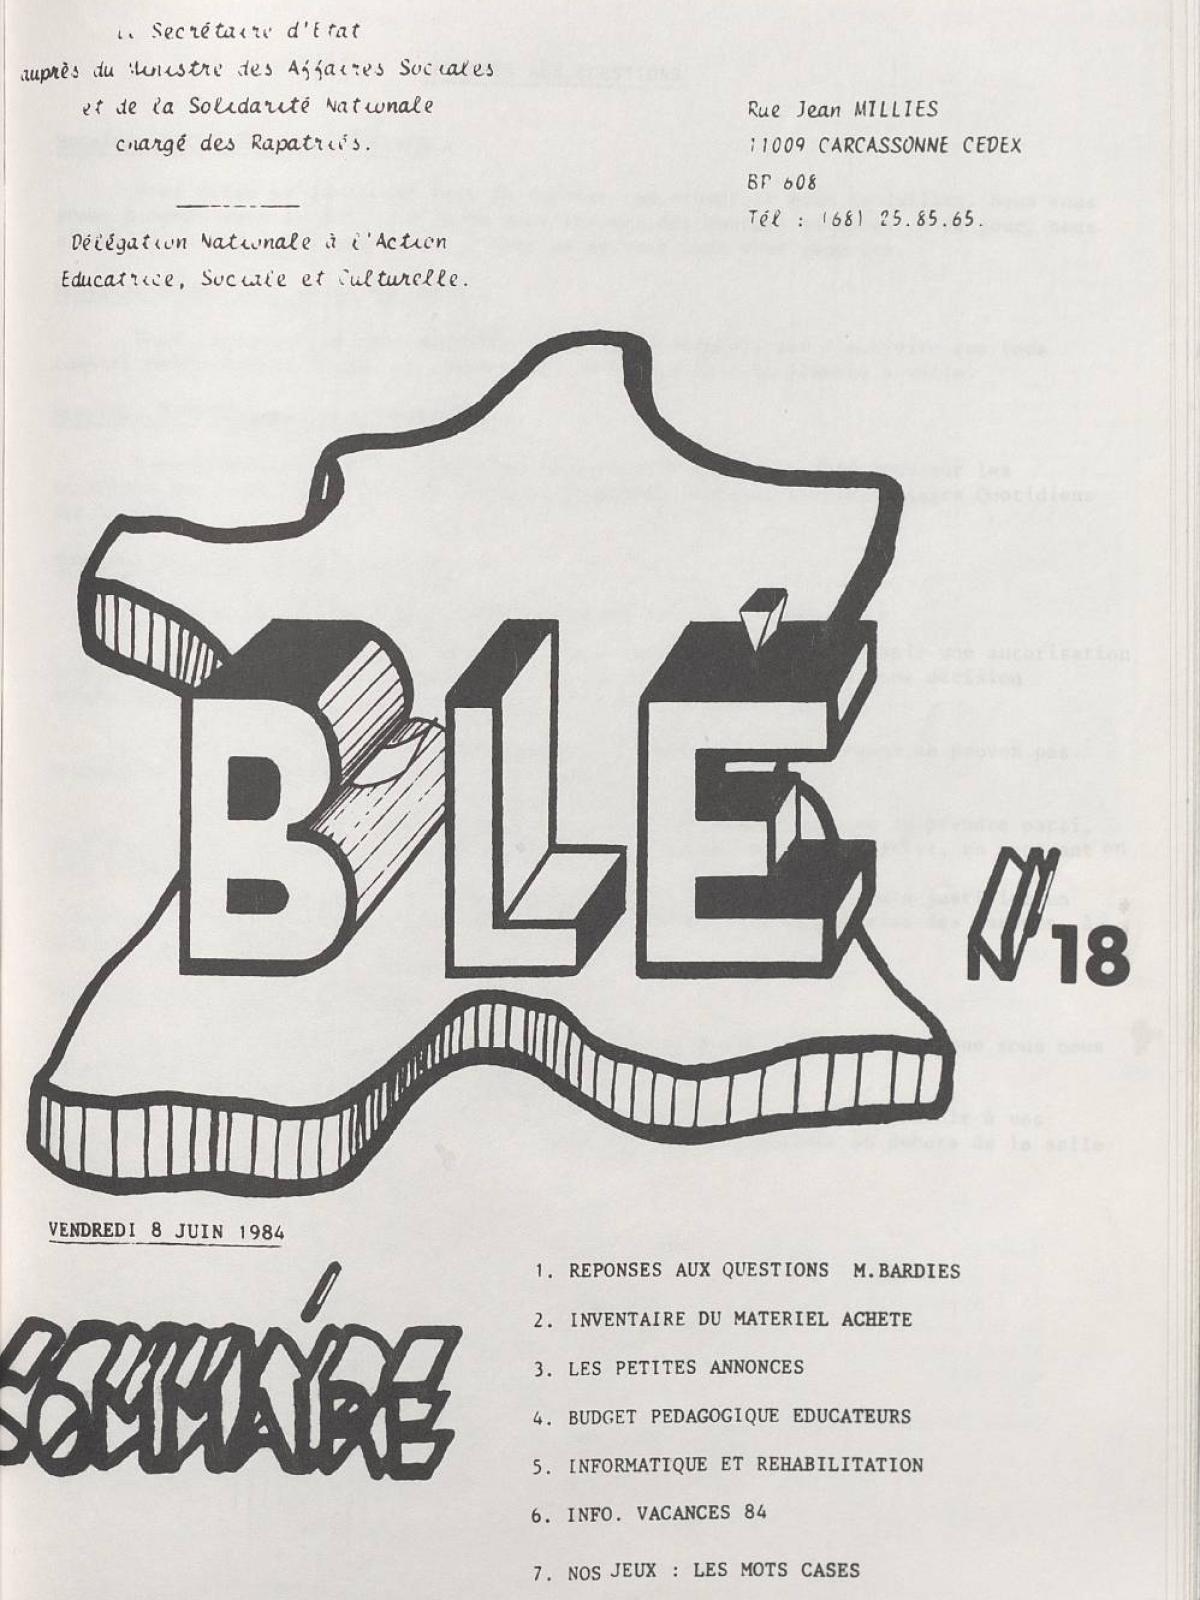 Illustration 12 : Bulletin de liaison des éducateurs (BLÉ) n°18, 8 juin 1984 (Archives nationales, 19870444/8)